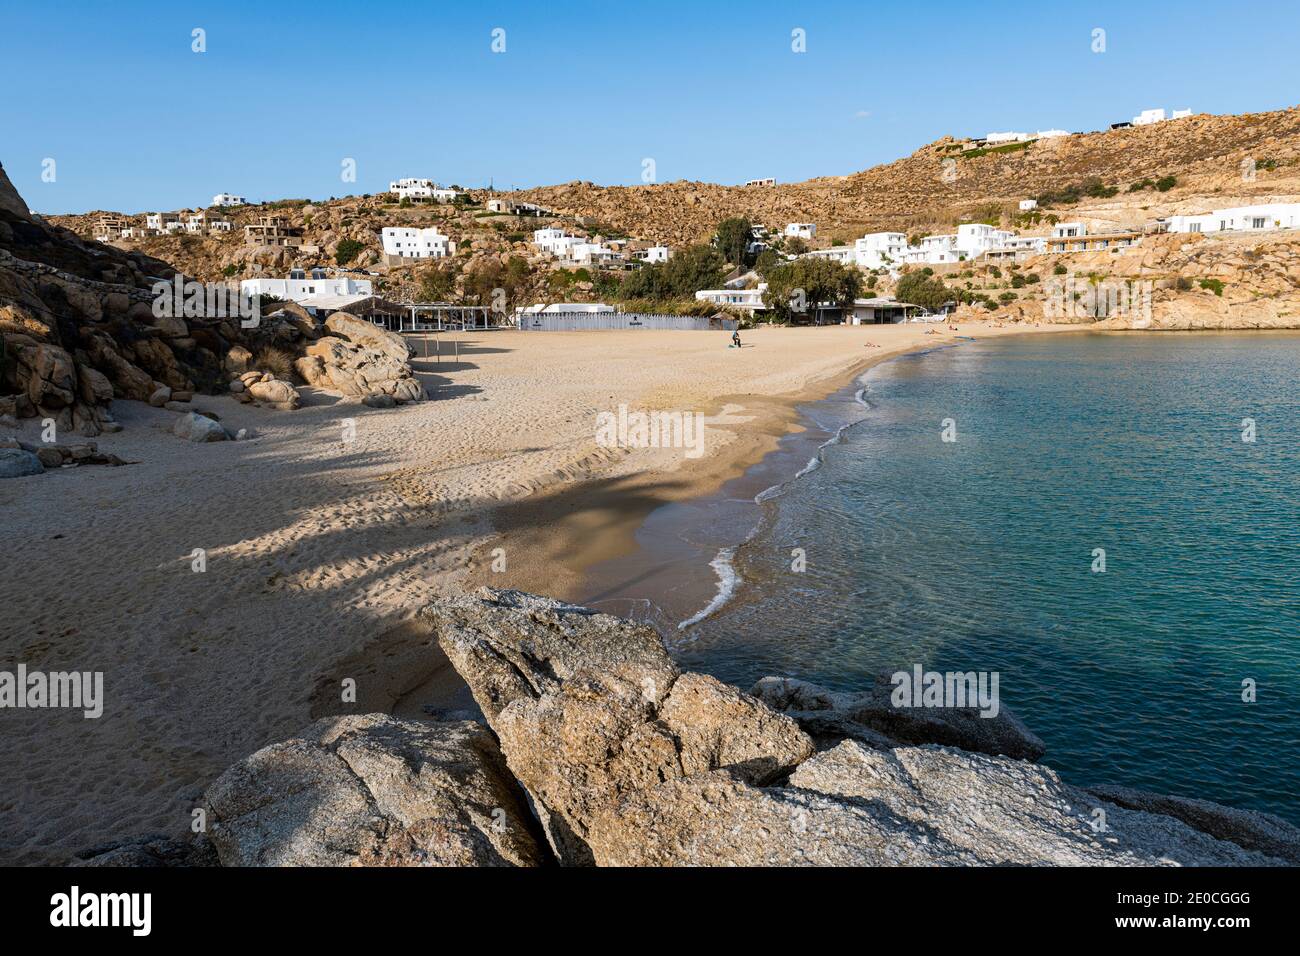 Plage déserte de Super Paradise, Mykonos, Cyclades, Iles grecques, Grèce, Europe Banque D'Images